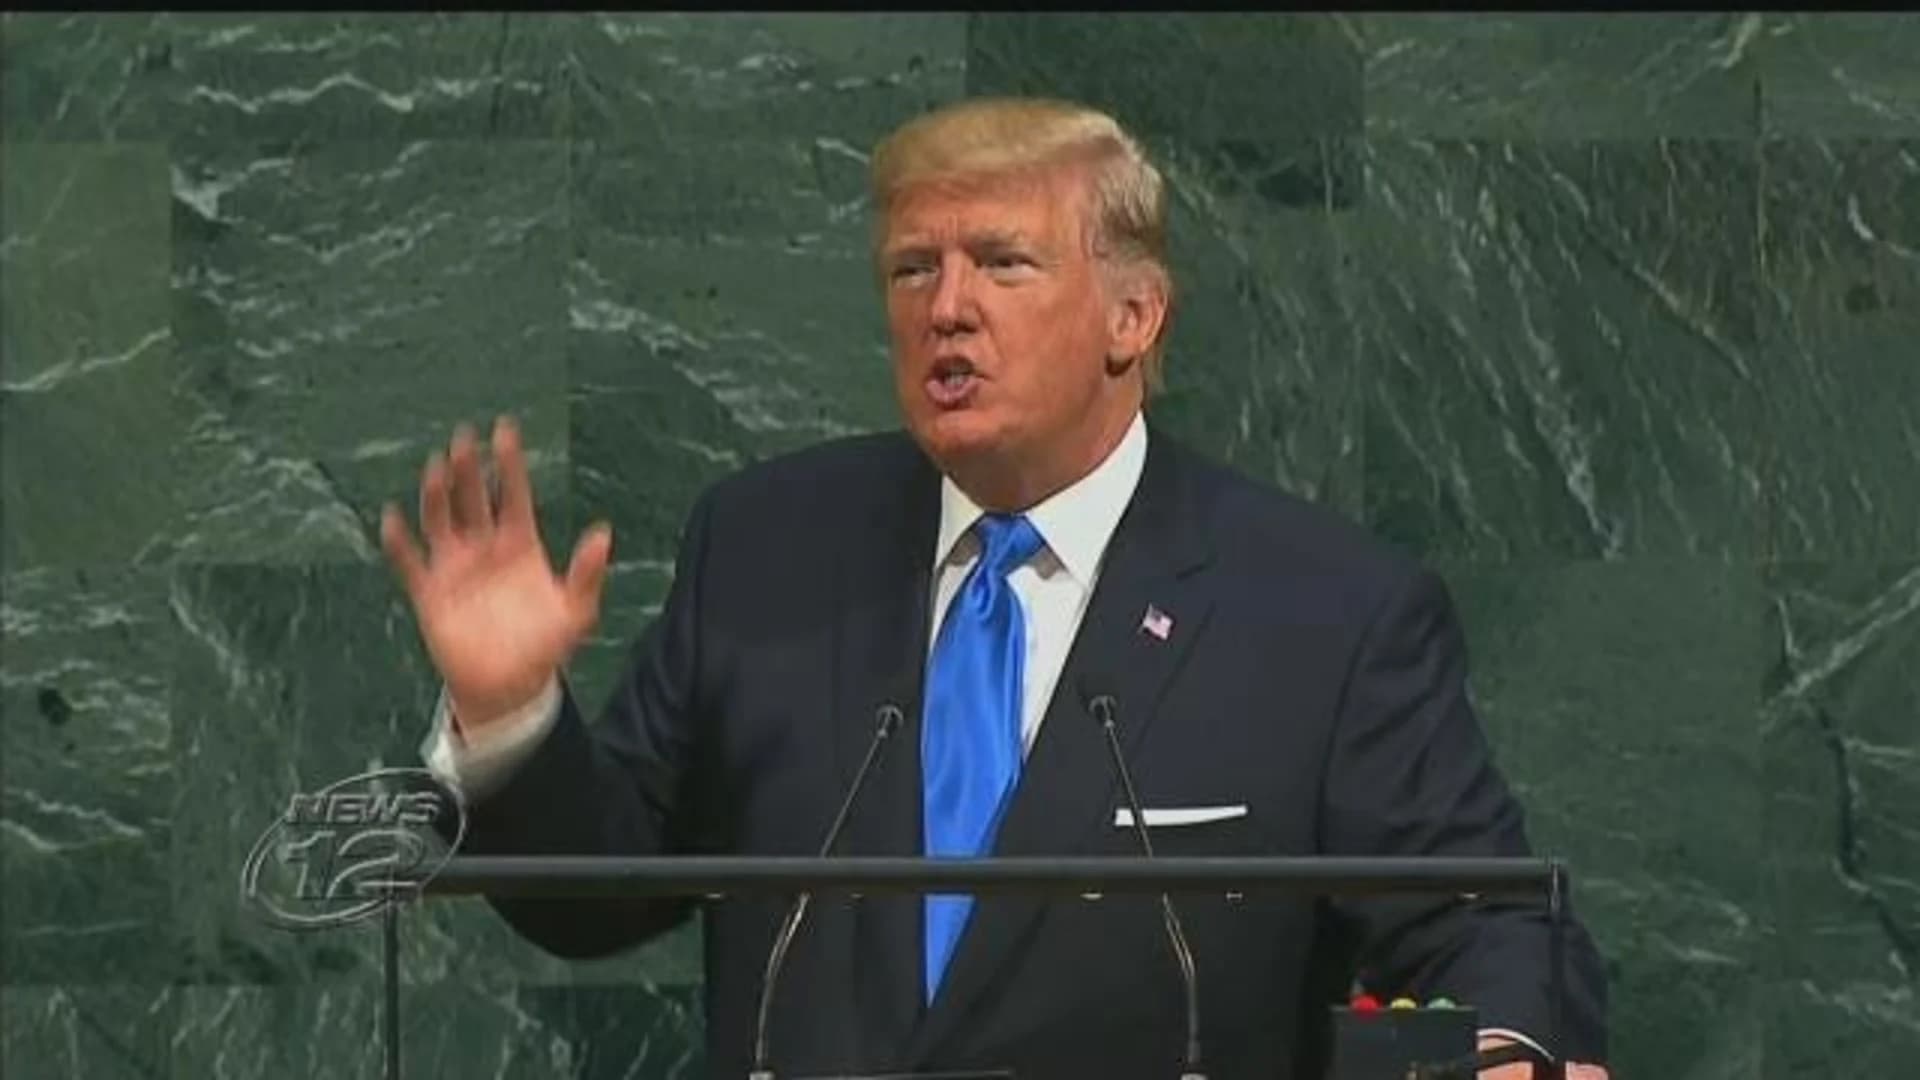 At UN, Trump threatens 'total destruction' of North Korea